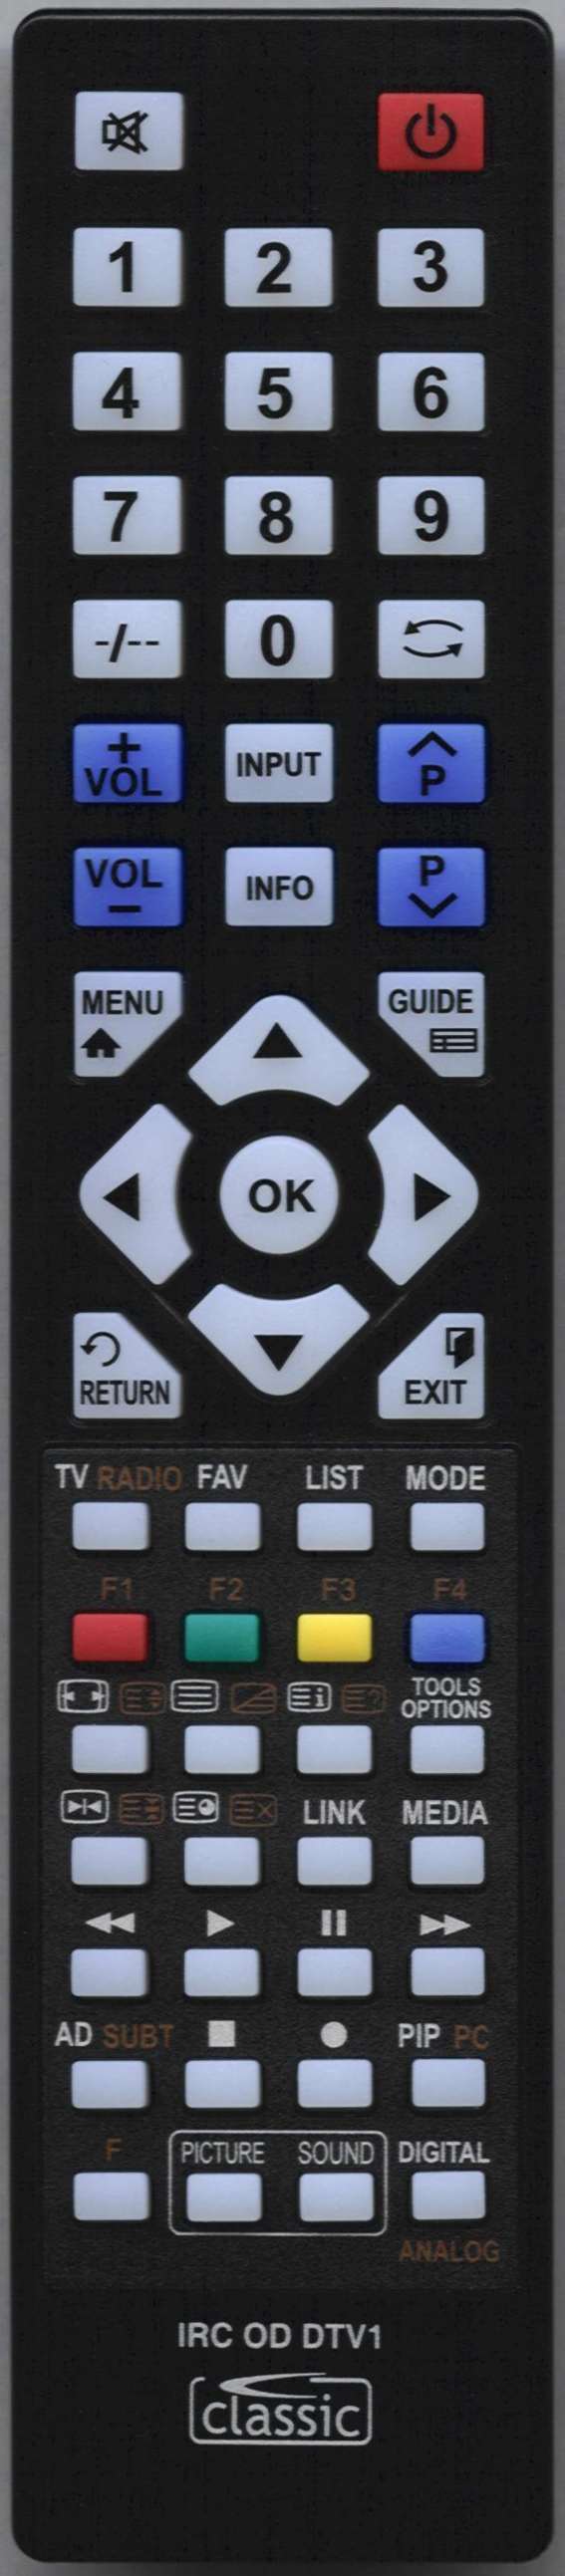 SONY KDL32V5810 Remote Control